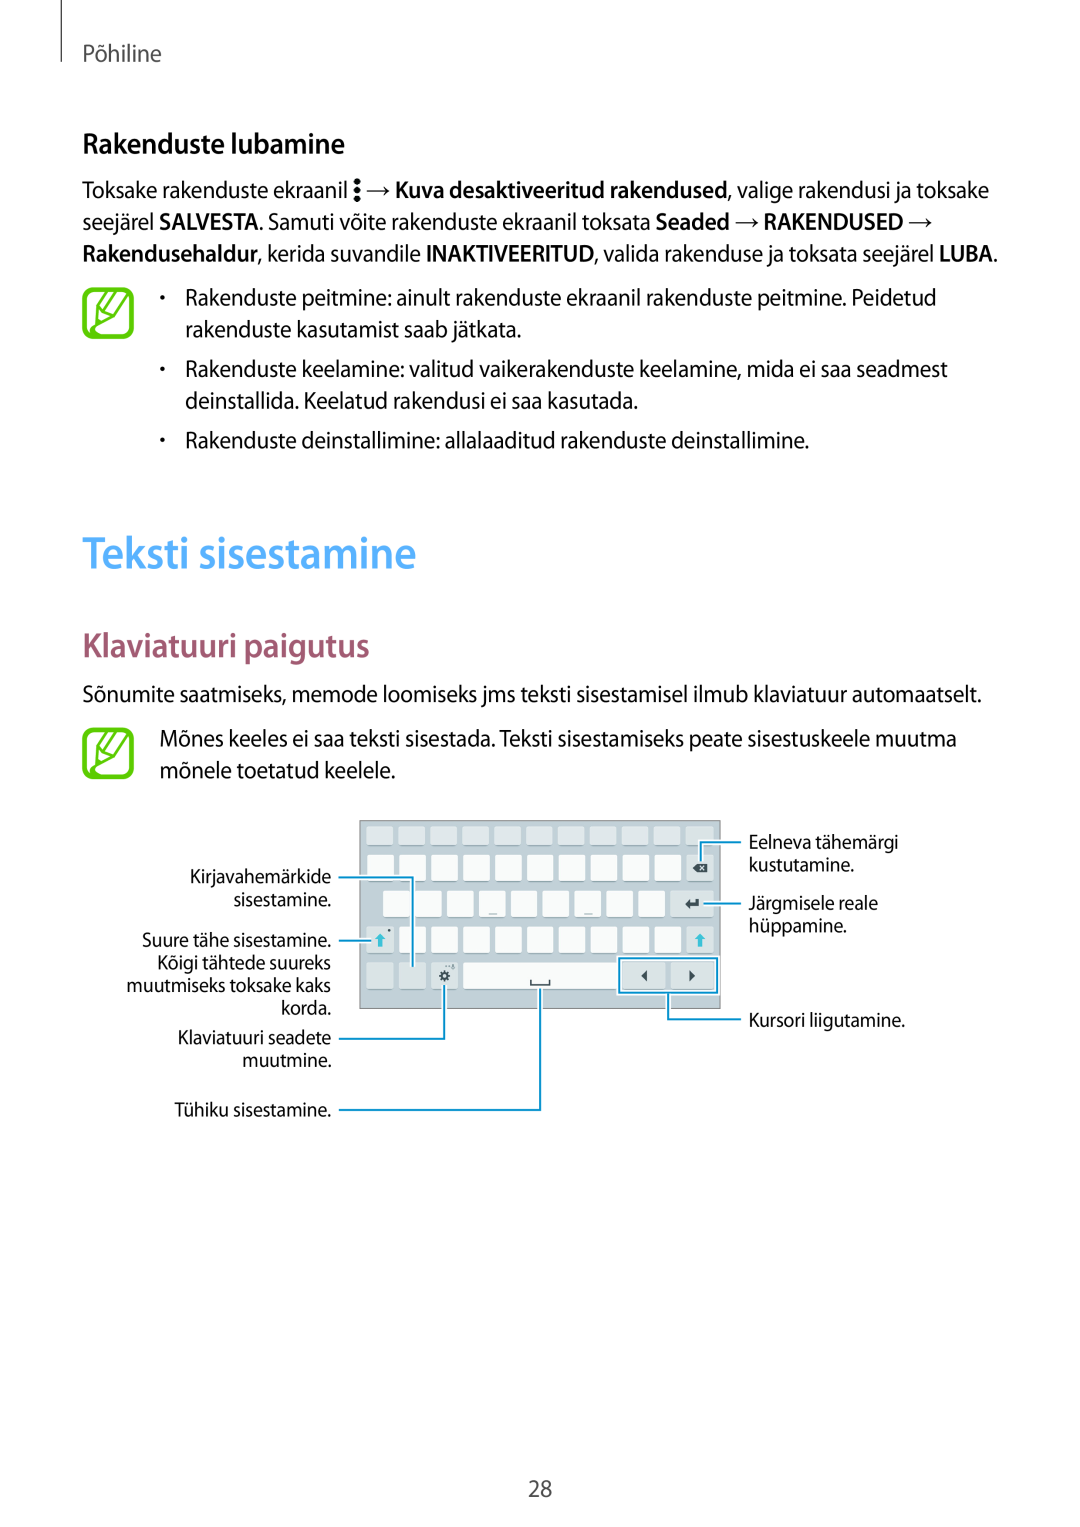 Samsung SM-T700NZWASEB, SM-T700NTSASEB manual Teksti sisestamine, Klaviatuuri paigutus, Rakenduste lubamine, Põhiline 